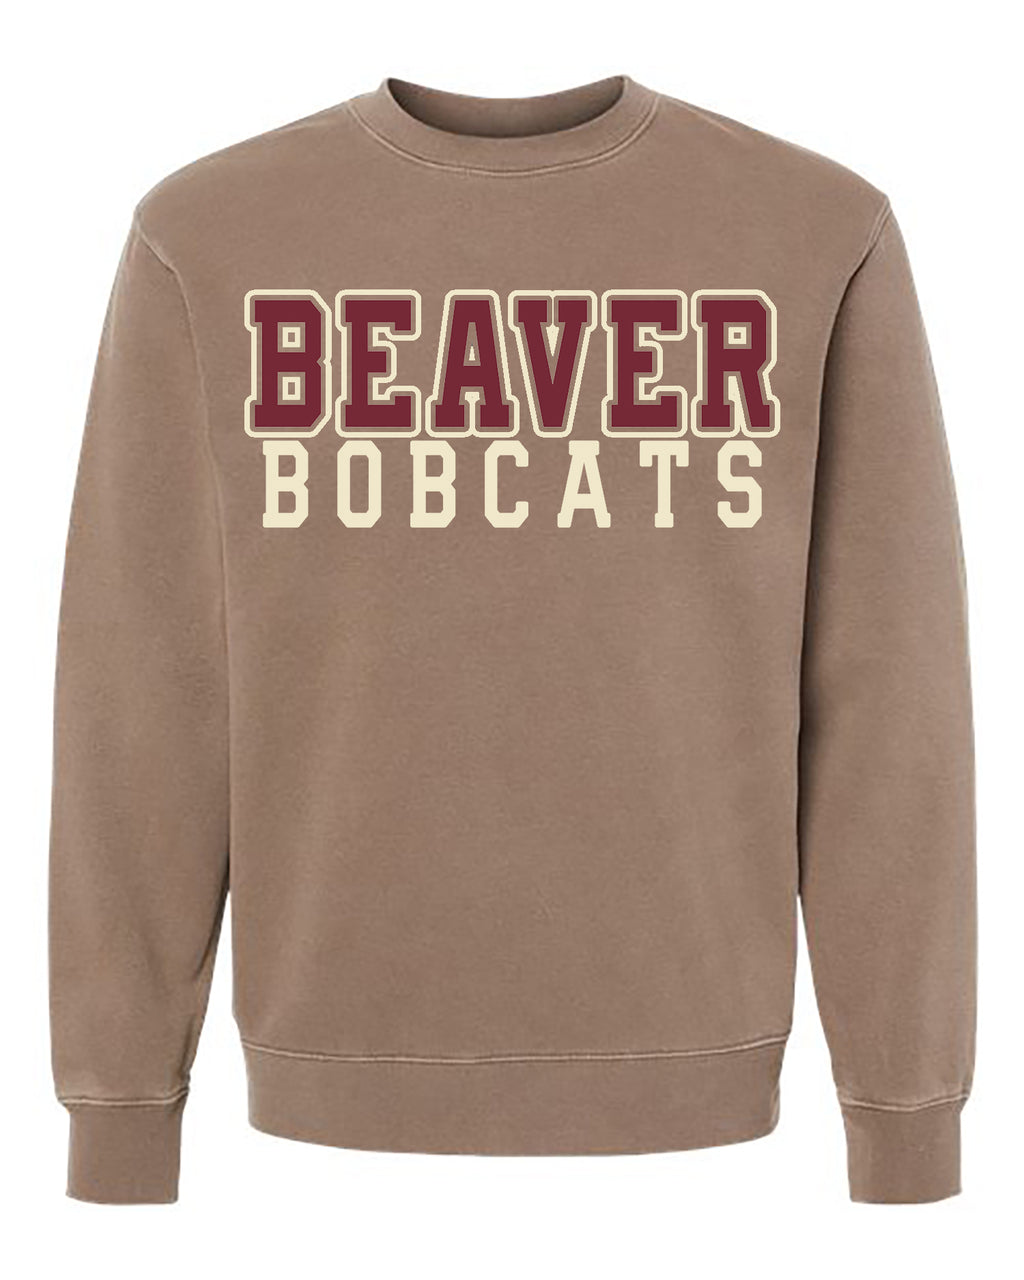 Vintage Beaver Collegiate Unisex Crewneck